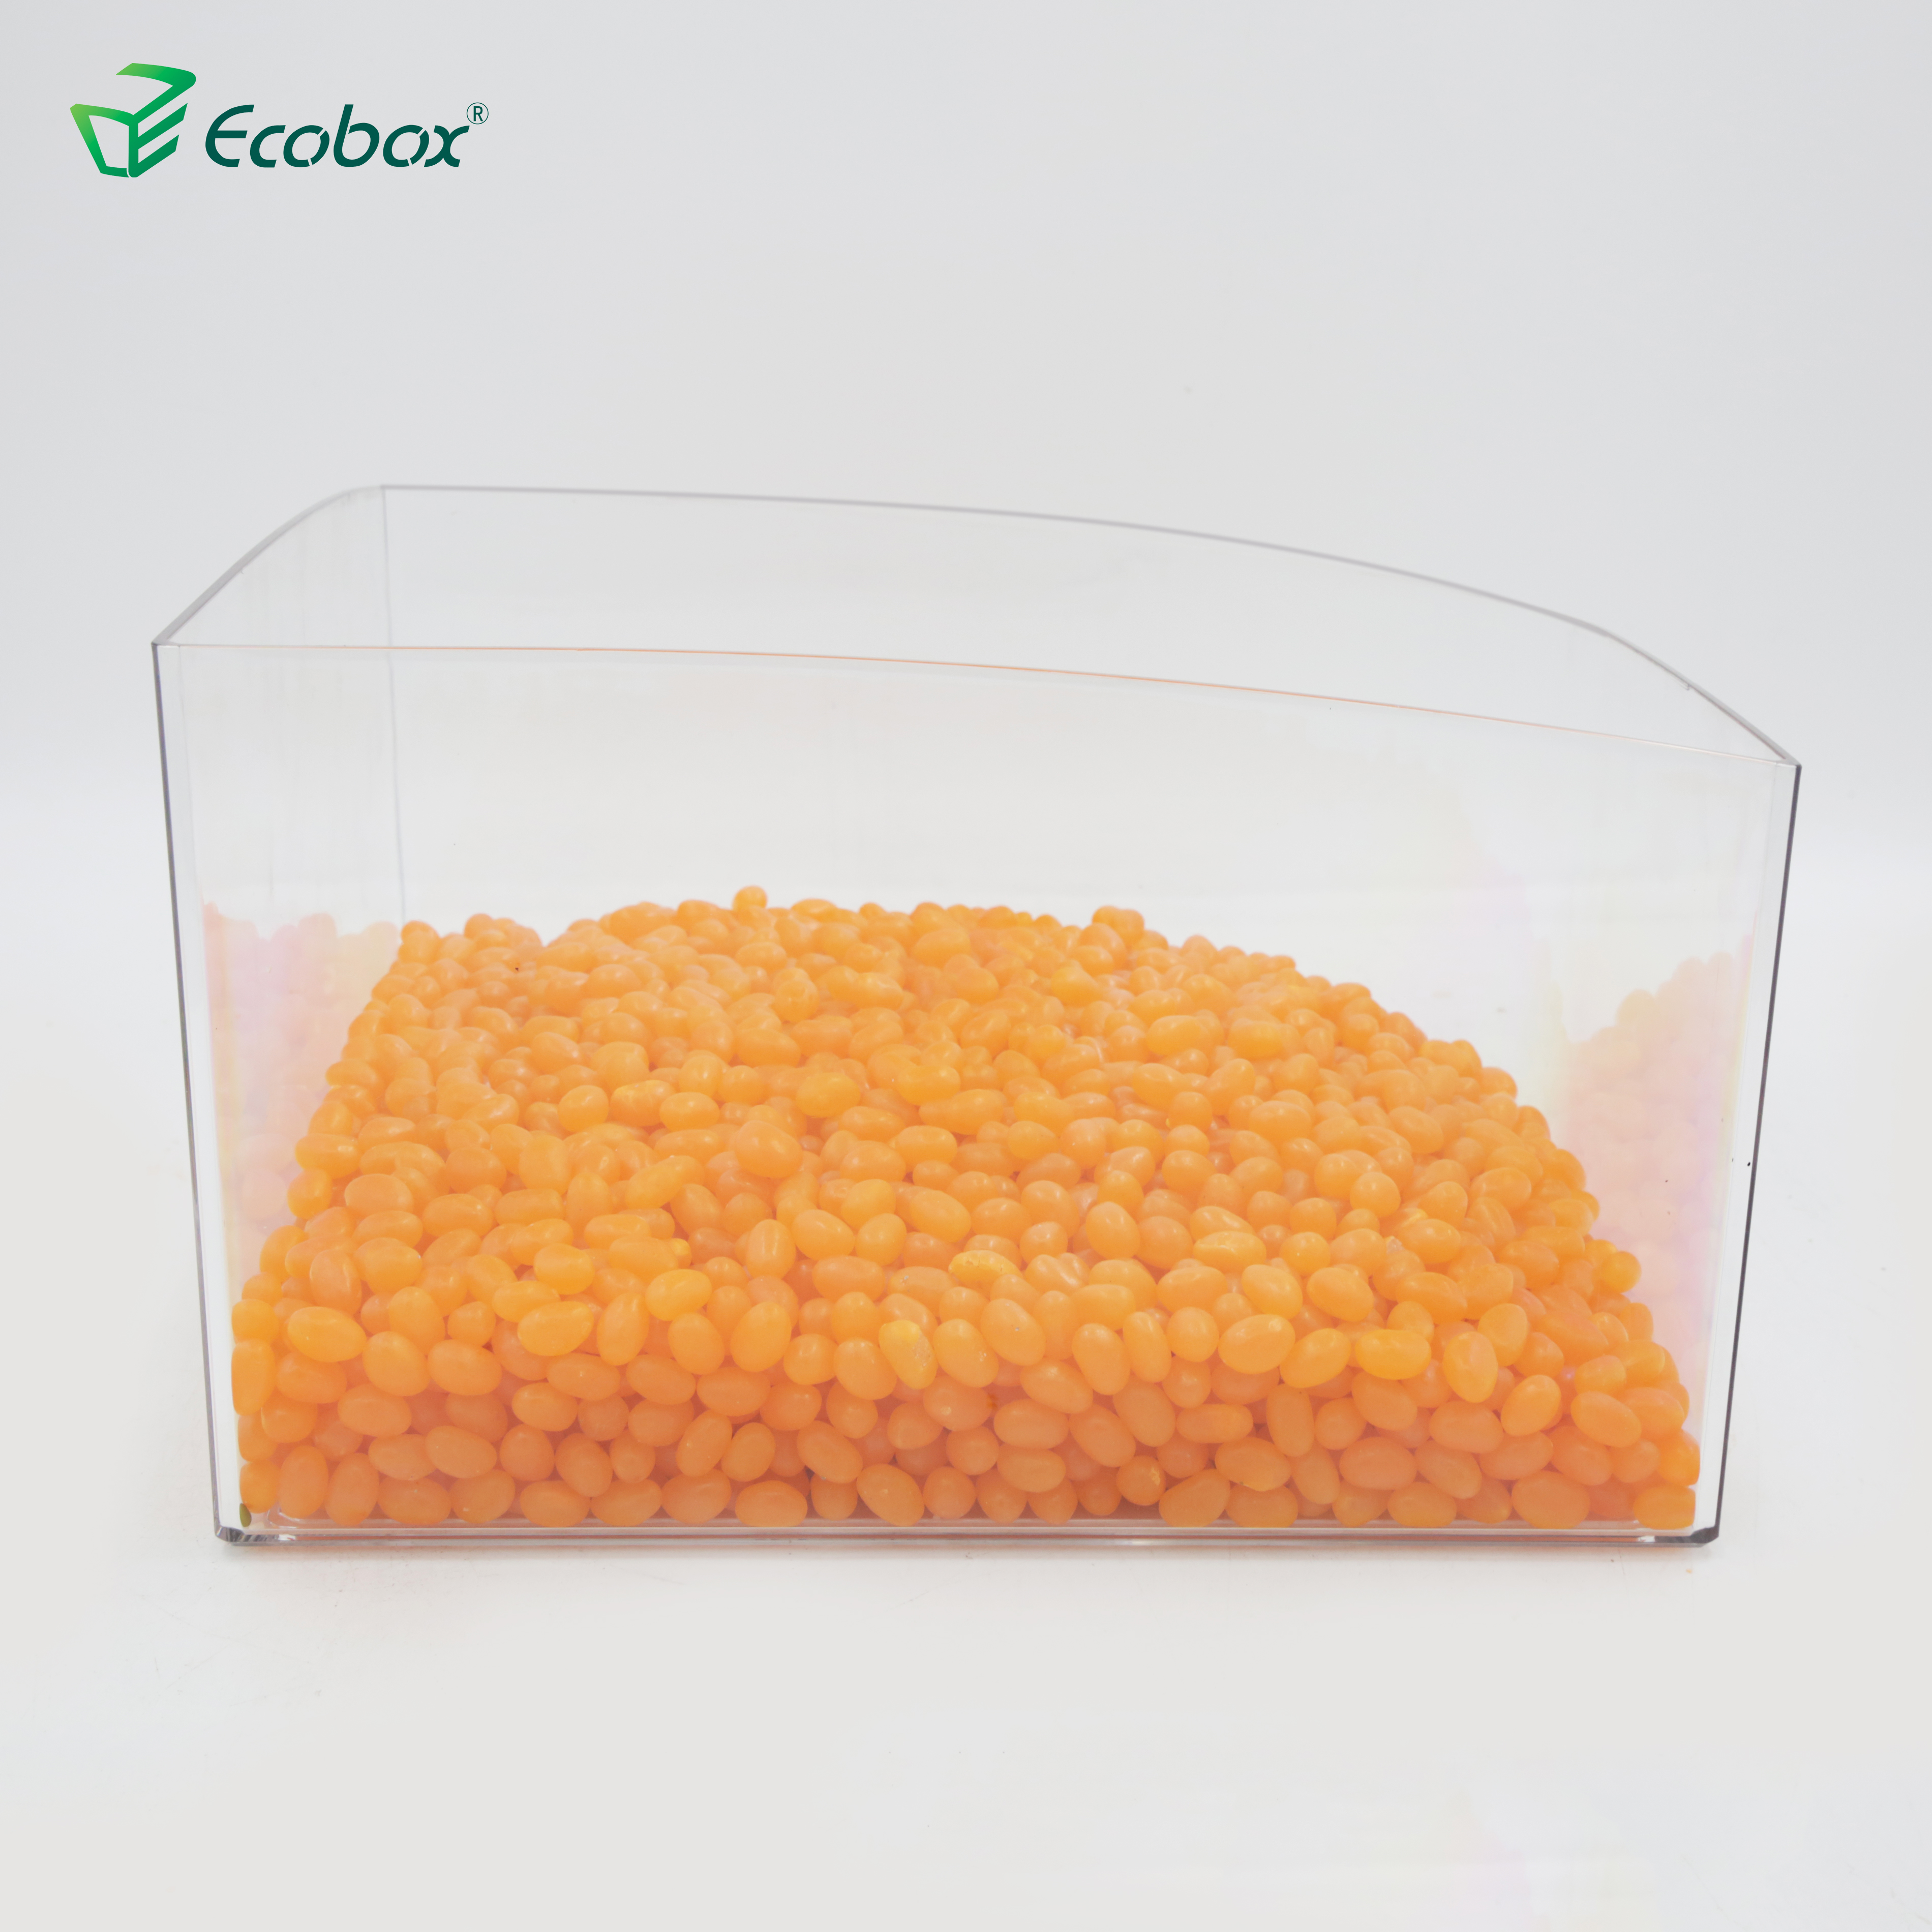 Contenedor a granel personalizado Ecobox SPH-050 de un cuarto de círculo